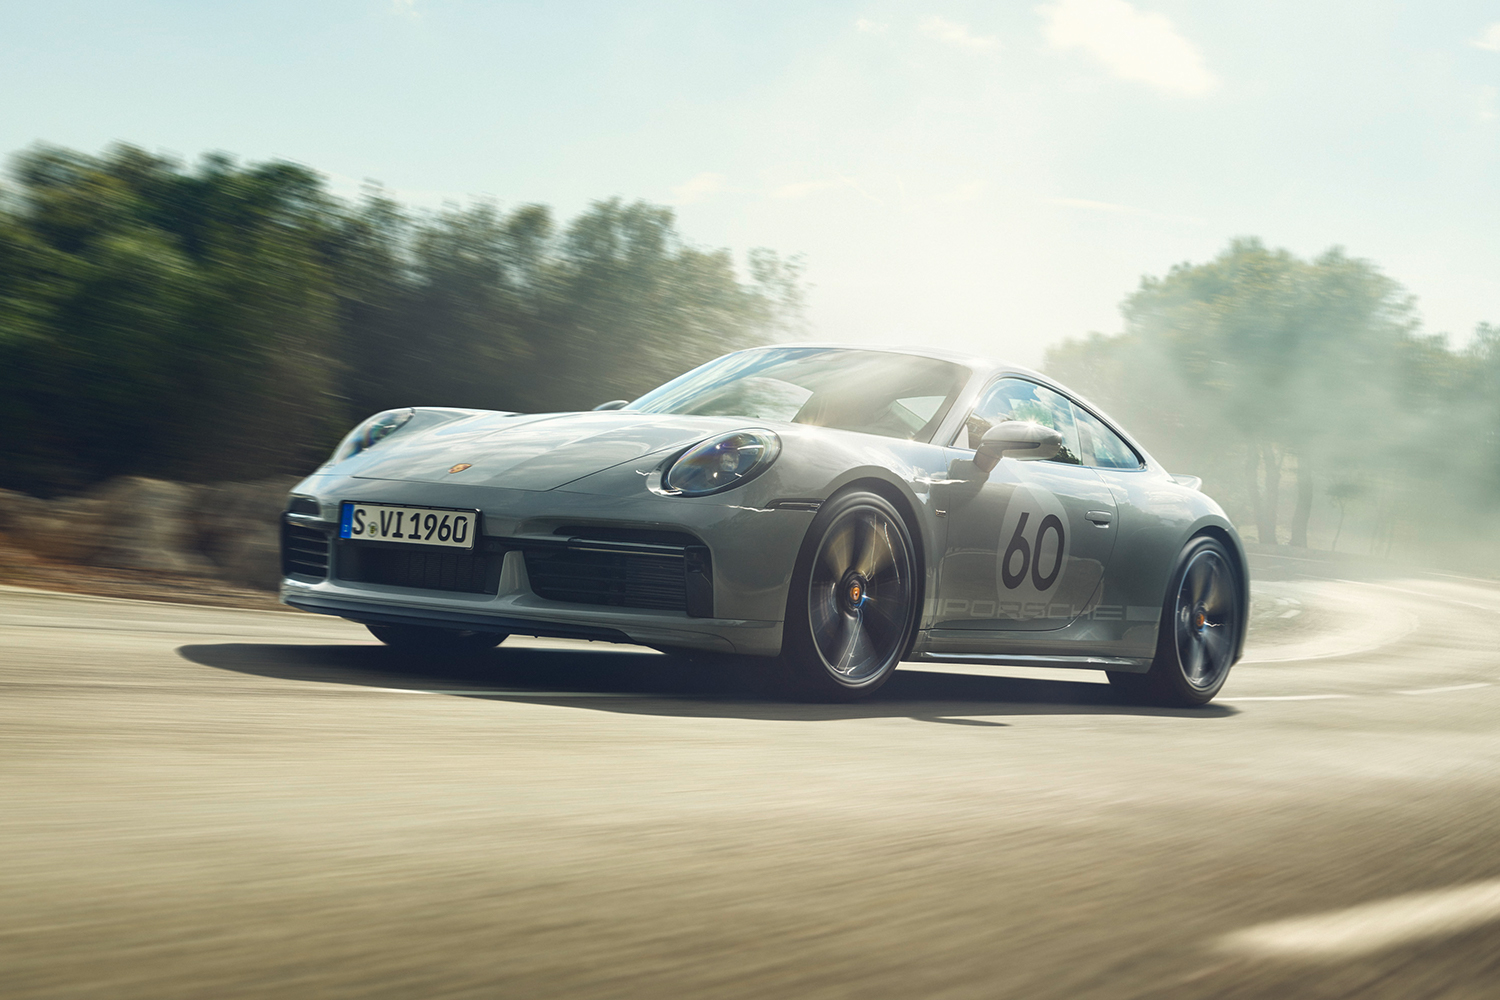 Porsche 911 Sport Classic Review: The Best Roadgoing 911? - InsideHook